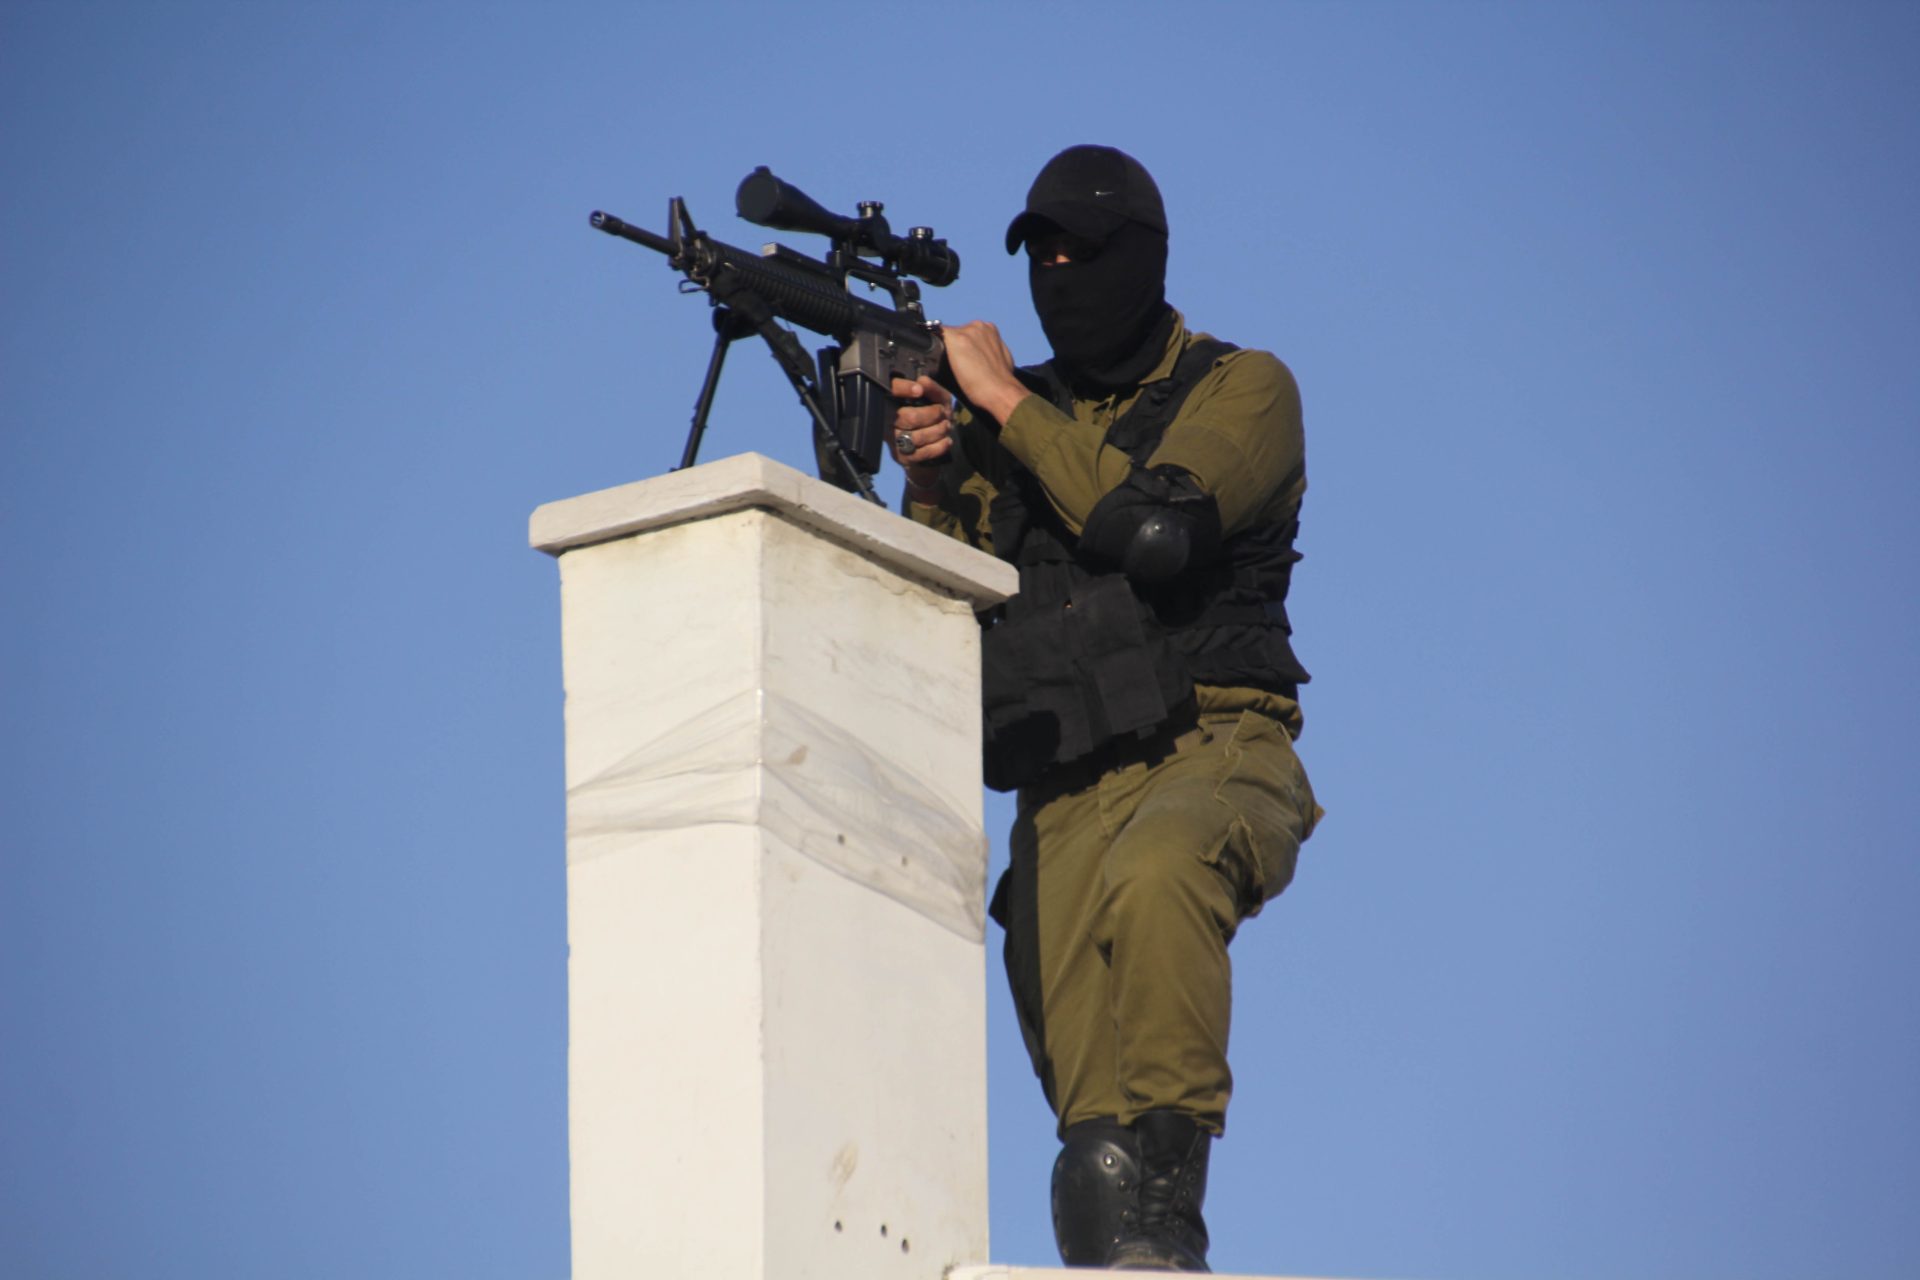 La résistance active le sniper contre l'occupation en Cisjordanie